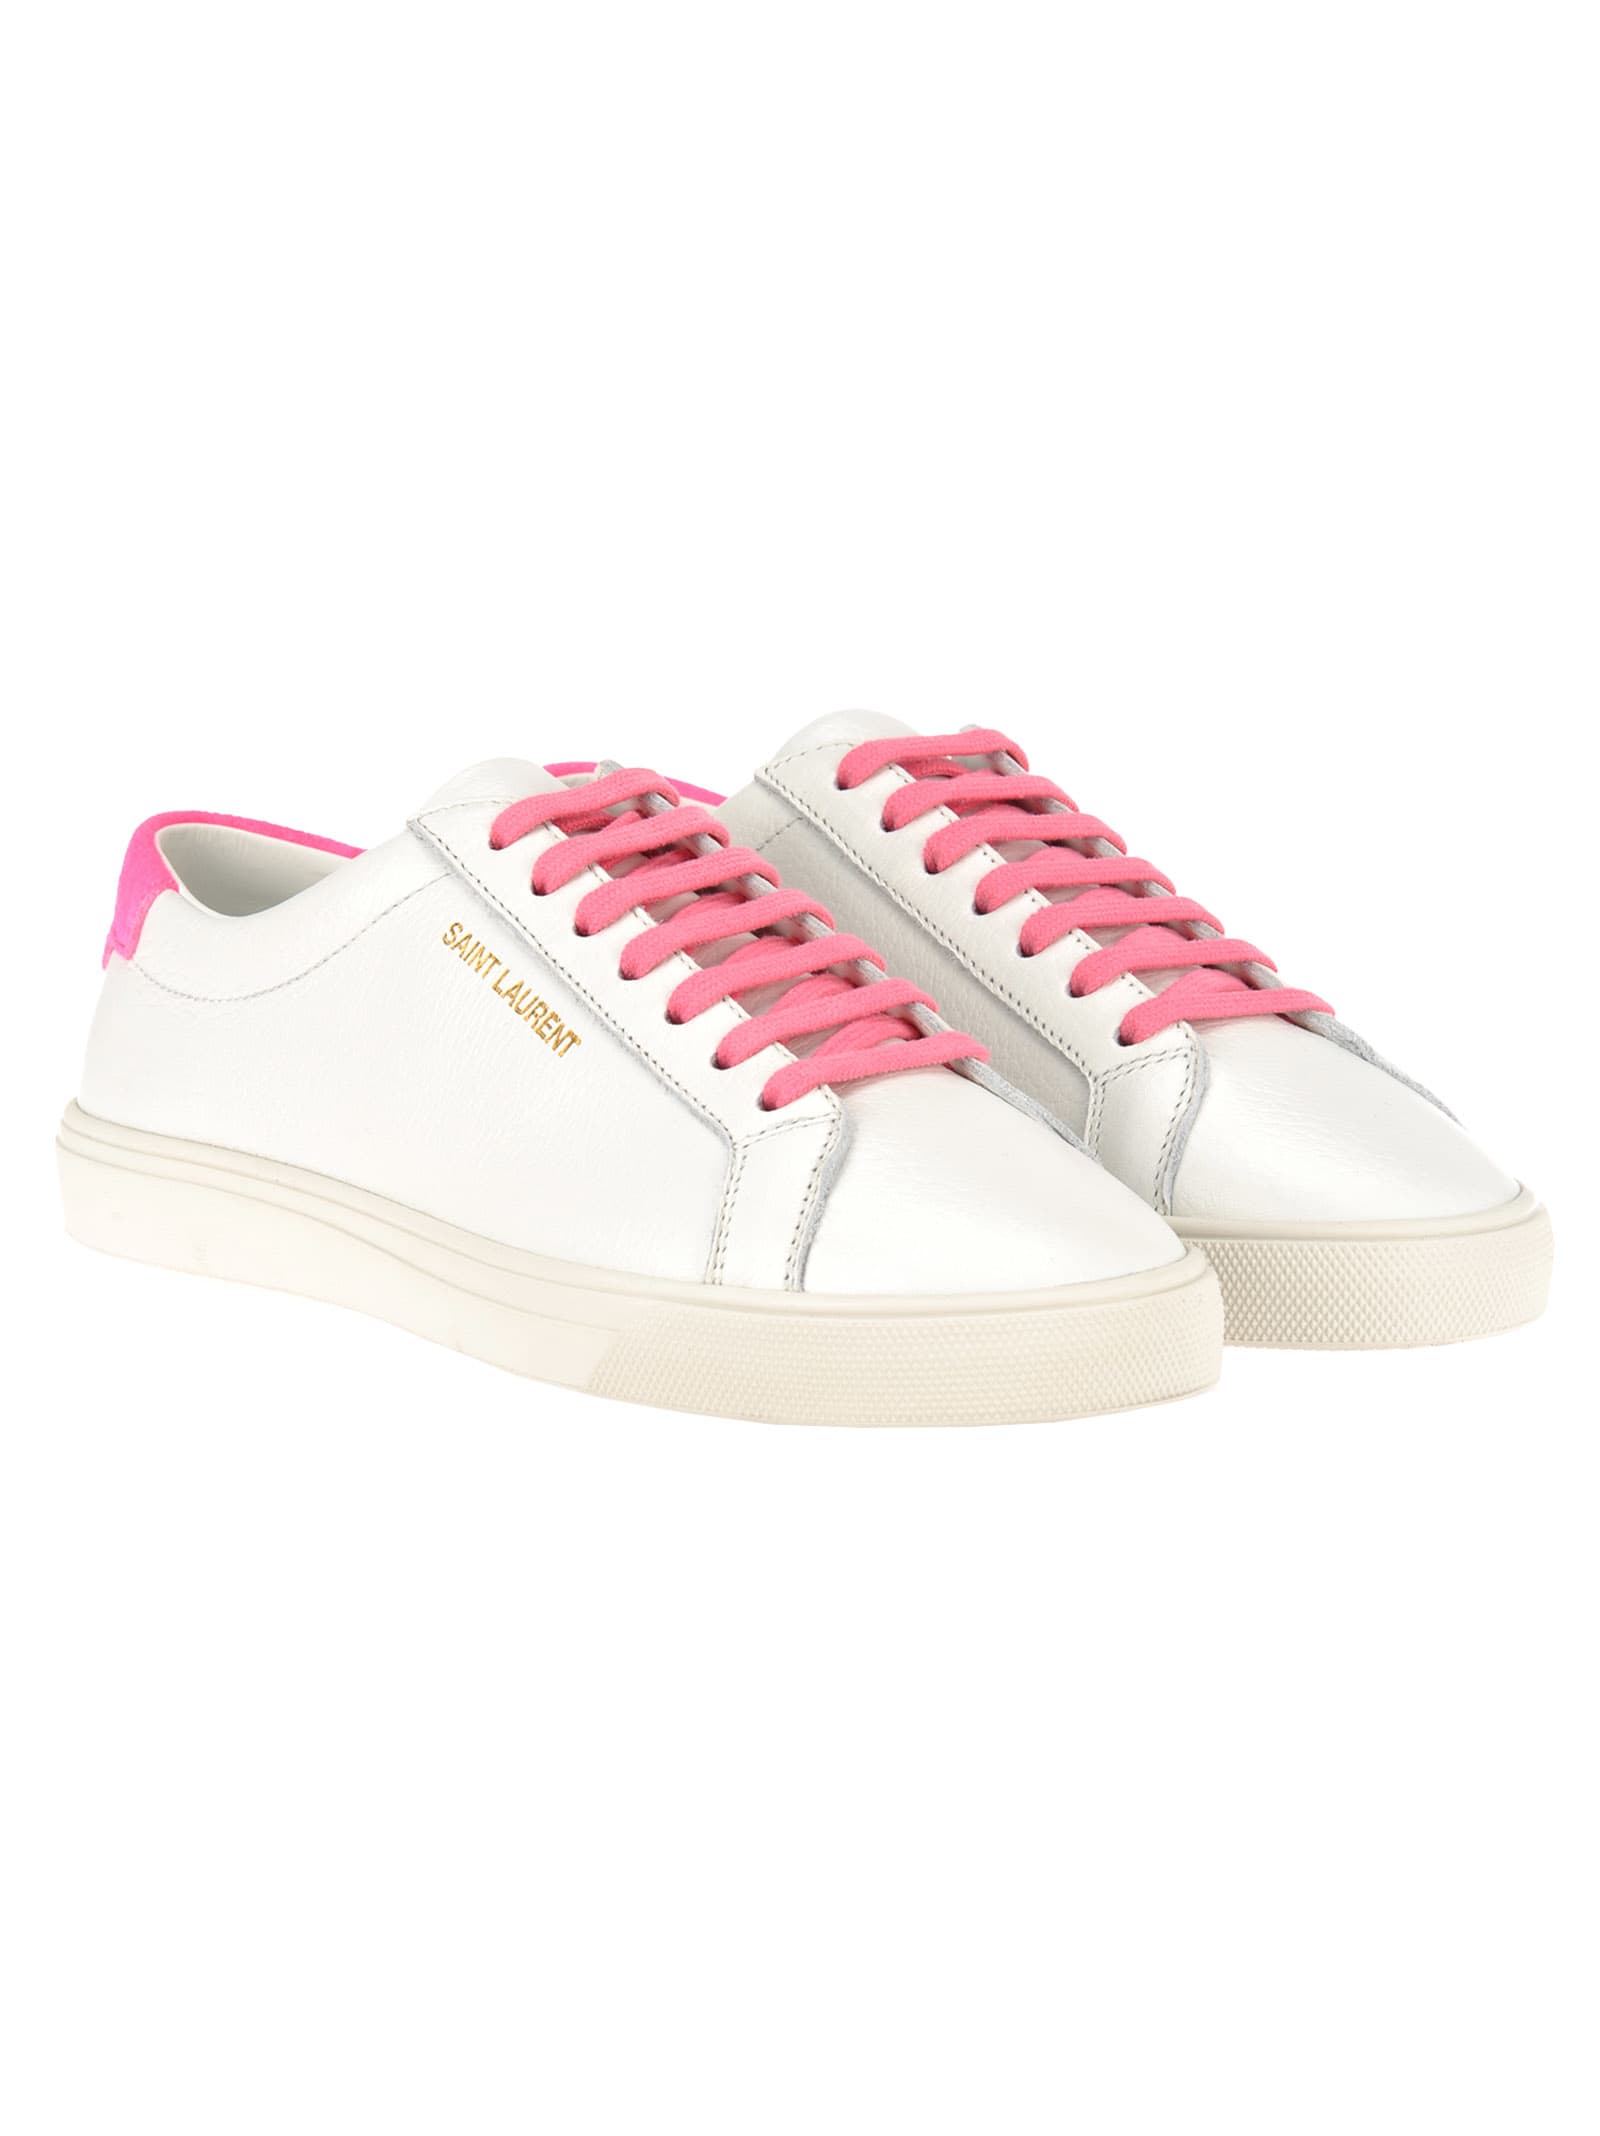 saint laurent pink shoes